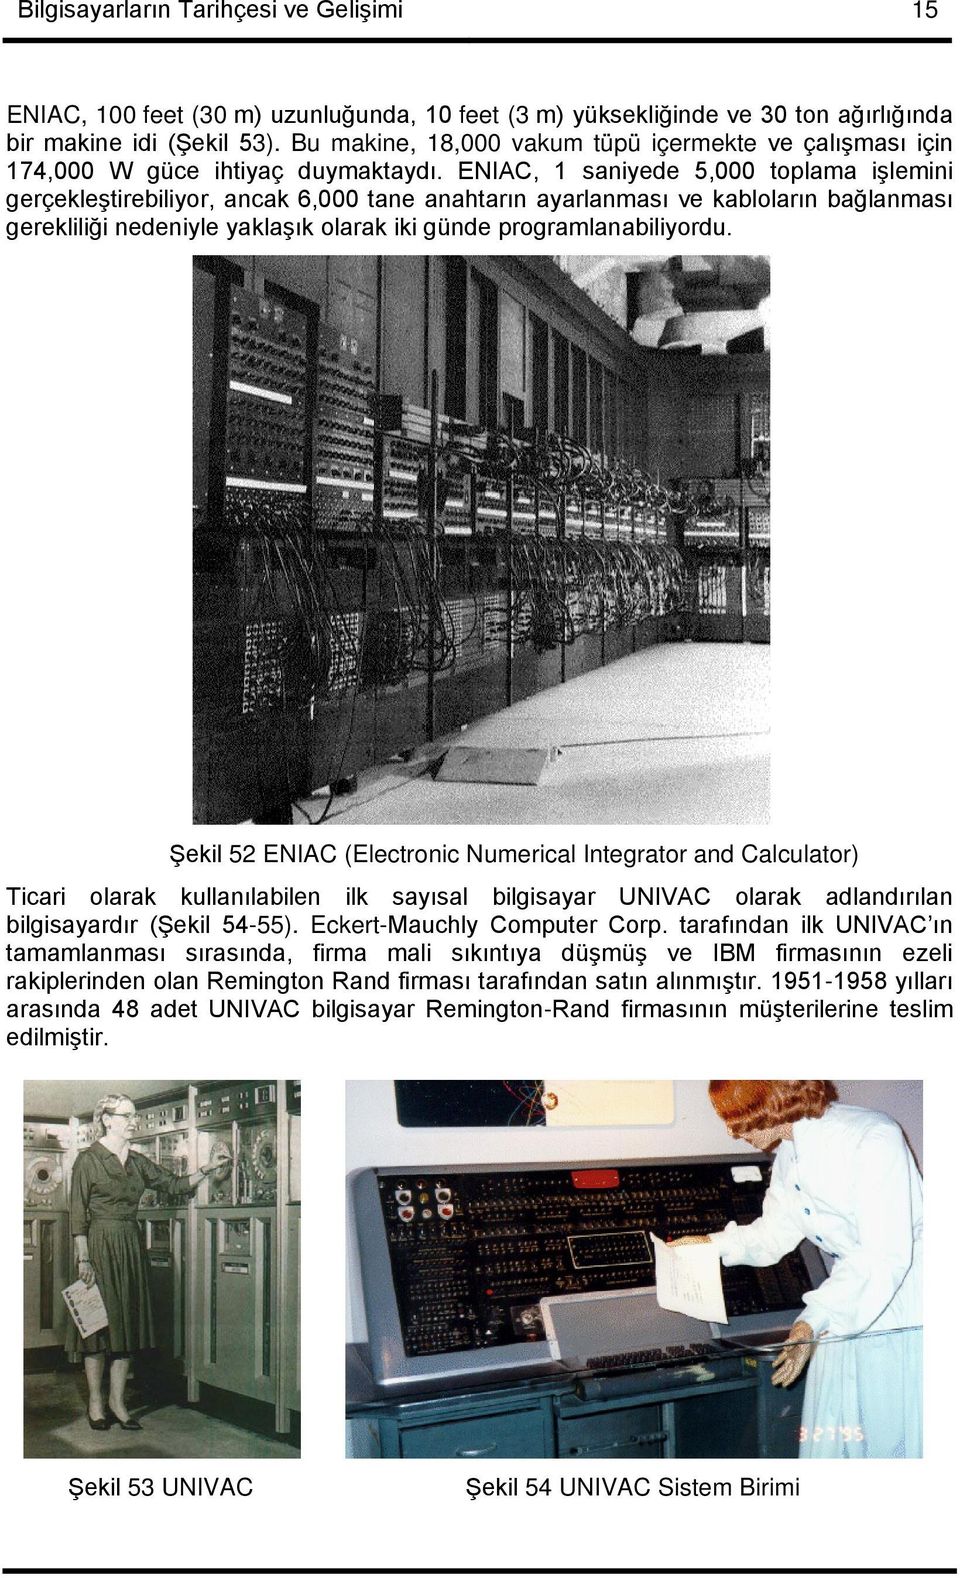 ENIAC, 1 saniyede 5,000 toplama işlemini gerçekleştirebiliyor, ancak 6,000 tane anahtarın ayarlanması ve kabloların bağlanması gerekliliği nedeniyle yaklaşık olarak iki günde programlanabiliyordu.